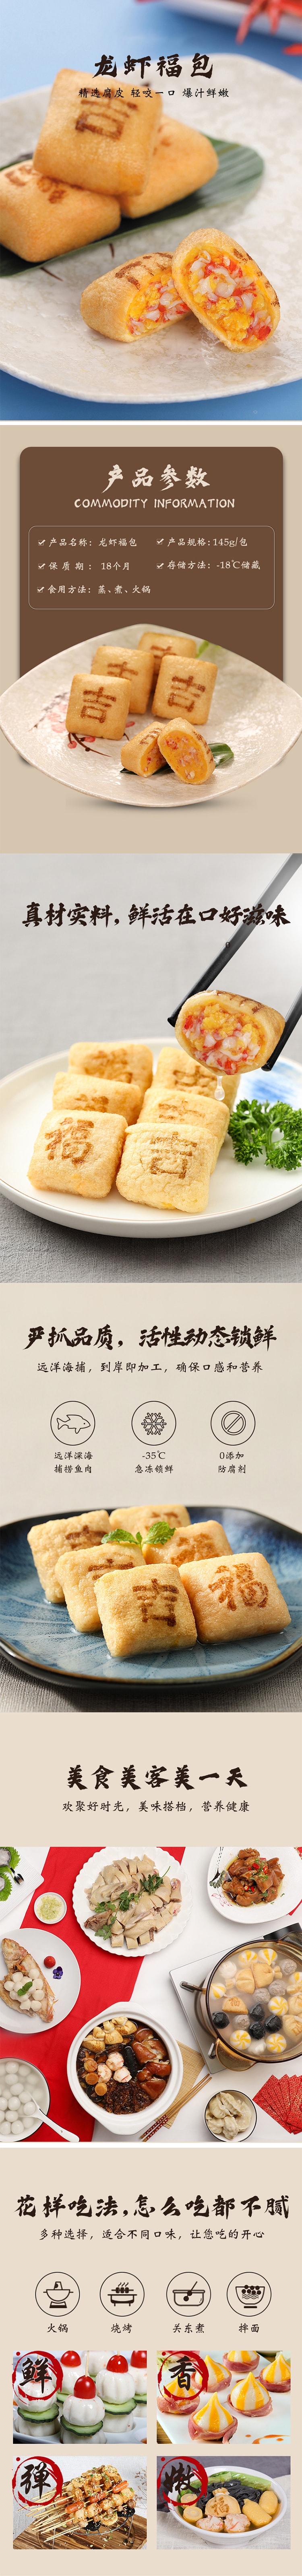 地道中国味 龙虾福包调理食品  袋装 145g